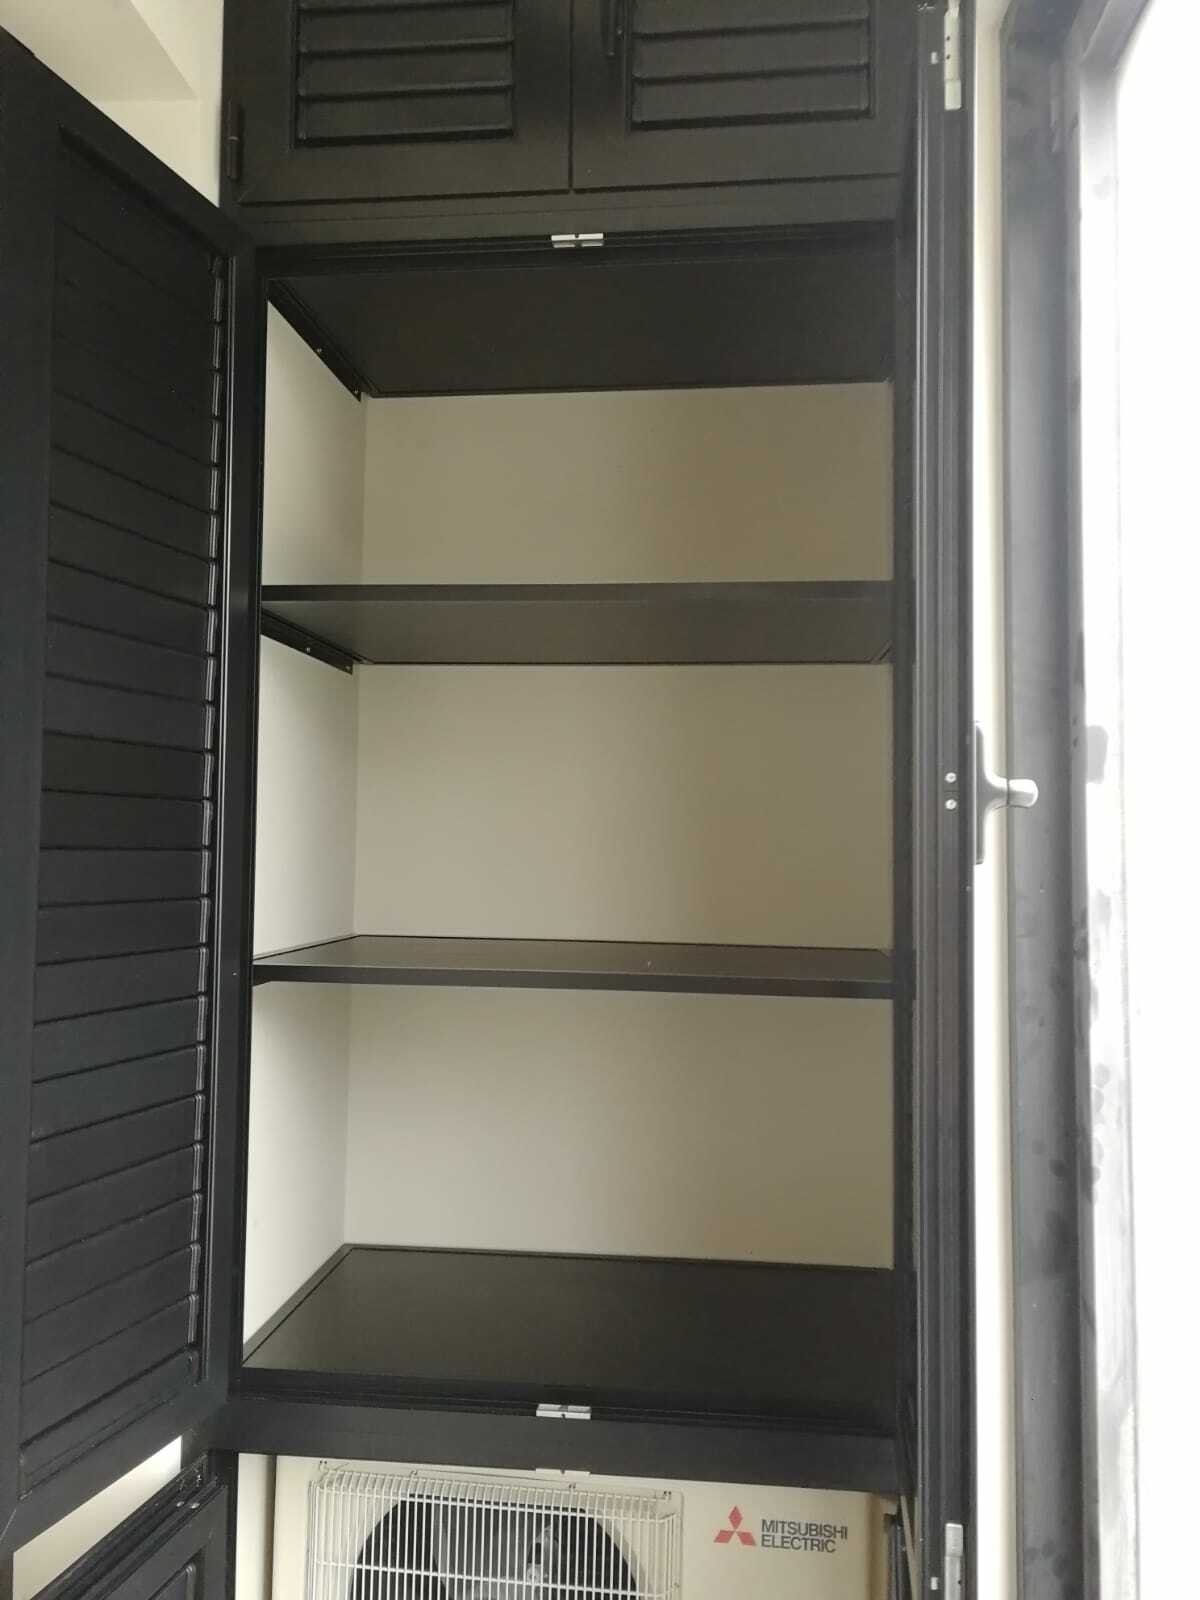 Шкаф на балкон с жалюзийными дверцами. Выполнен из алюминиевого профиля, поэтому устойчив к перепадам температуры.